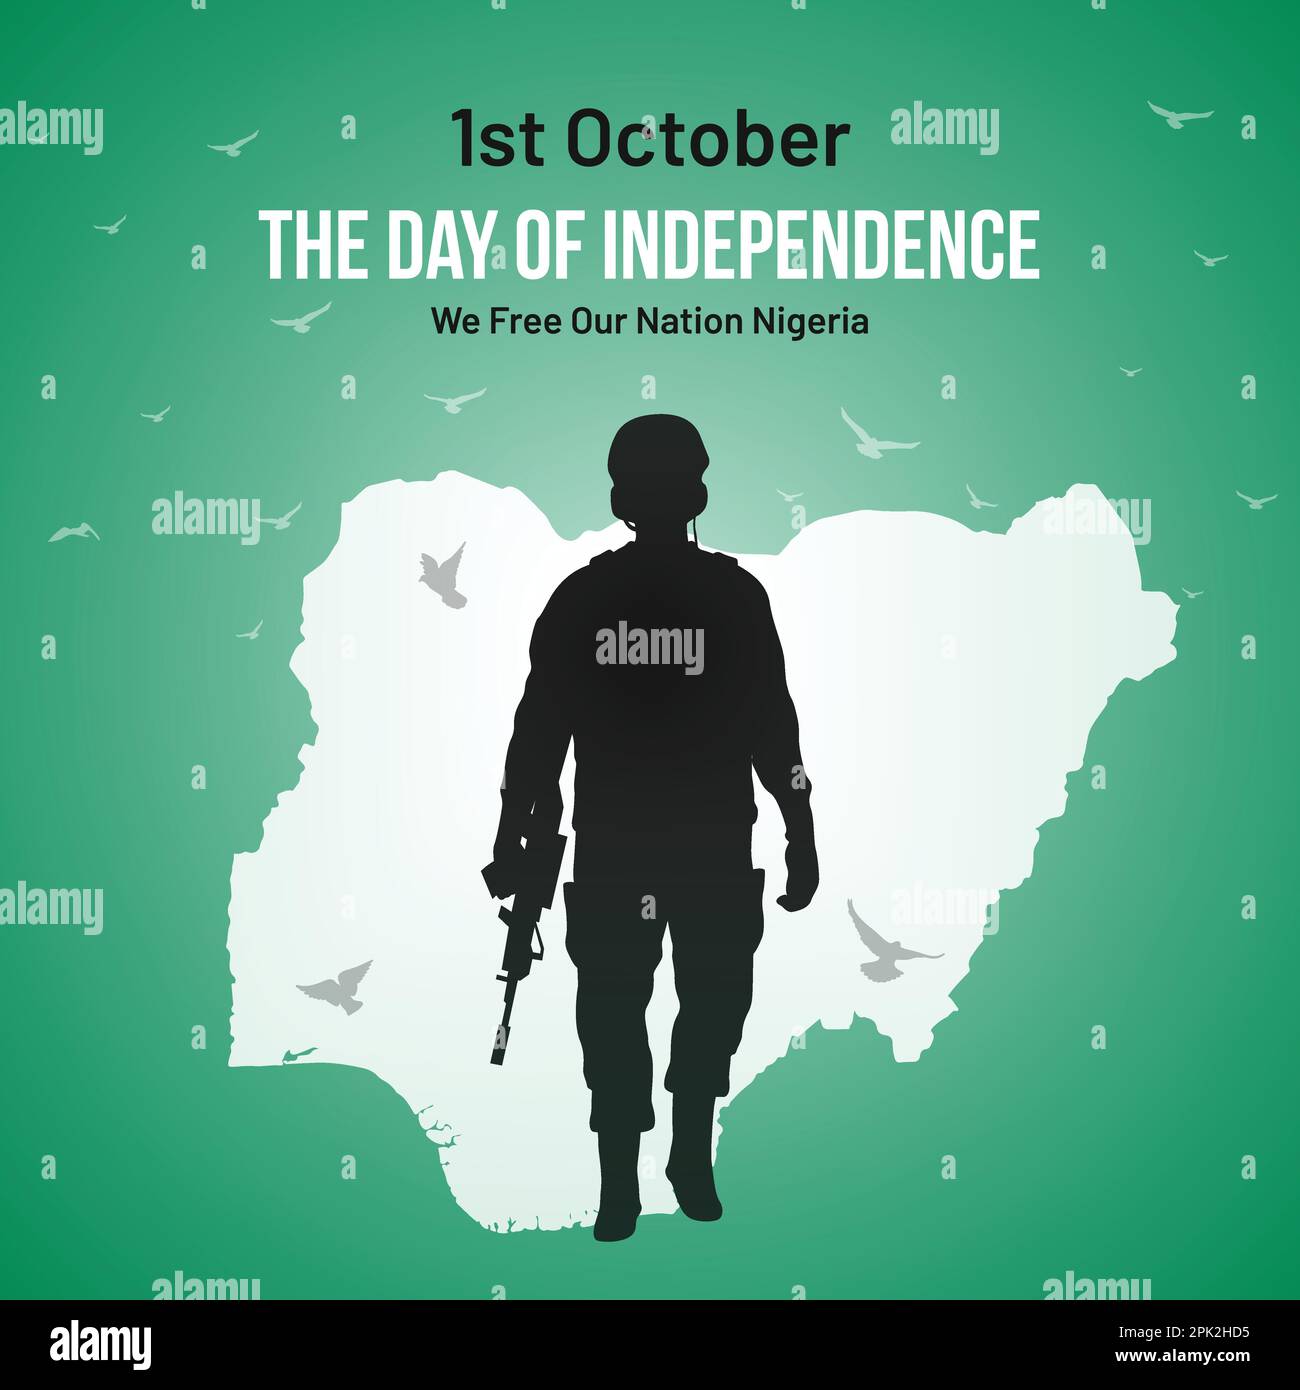 Nigeria Independence Day – Post In Sozialen Medien, Grußkarte, Vektor-Illustration-Design. 1. Oktober Nigerianischer Nationalfeiertag. Stock Vektor